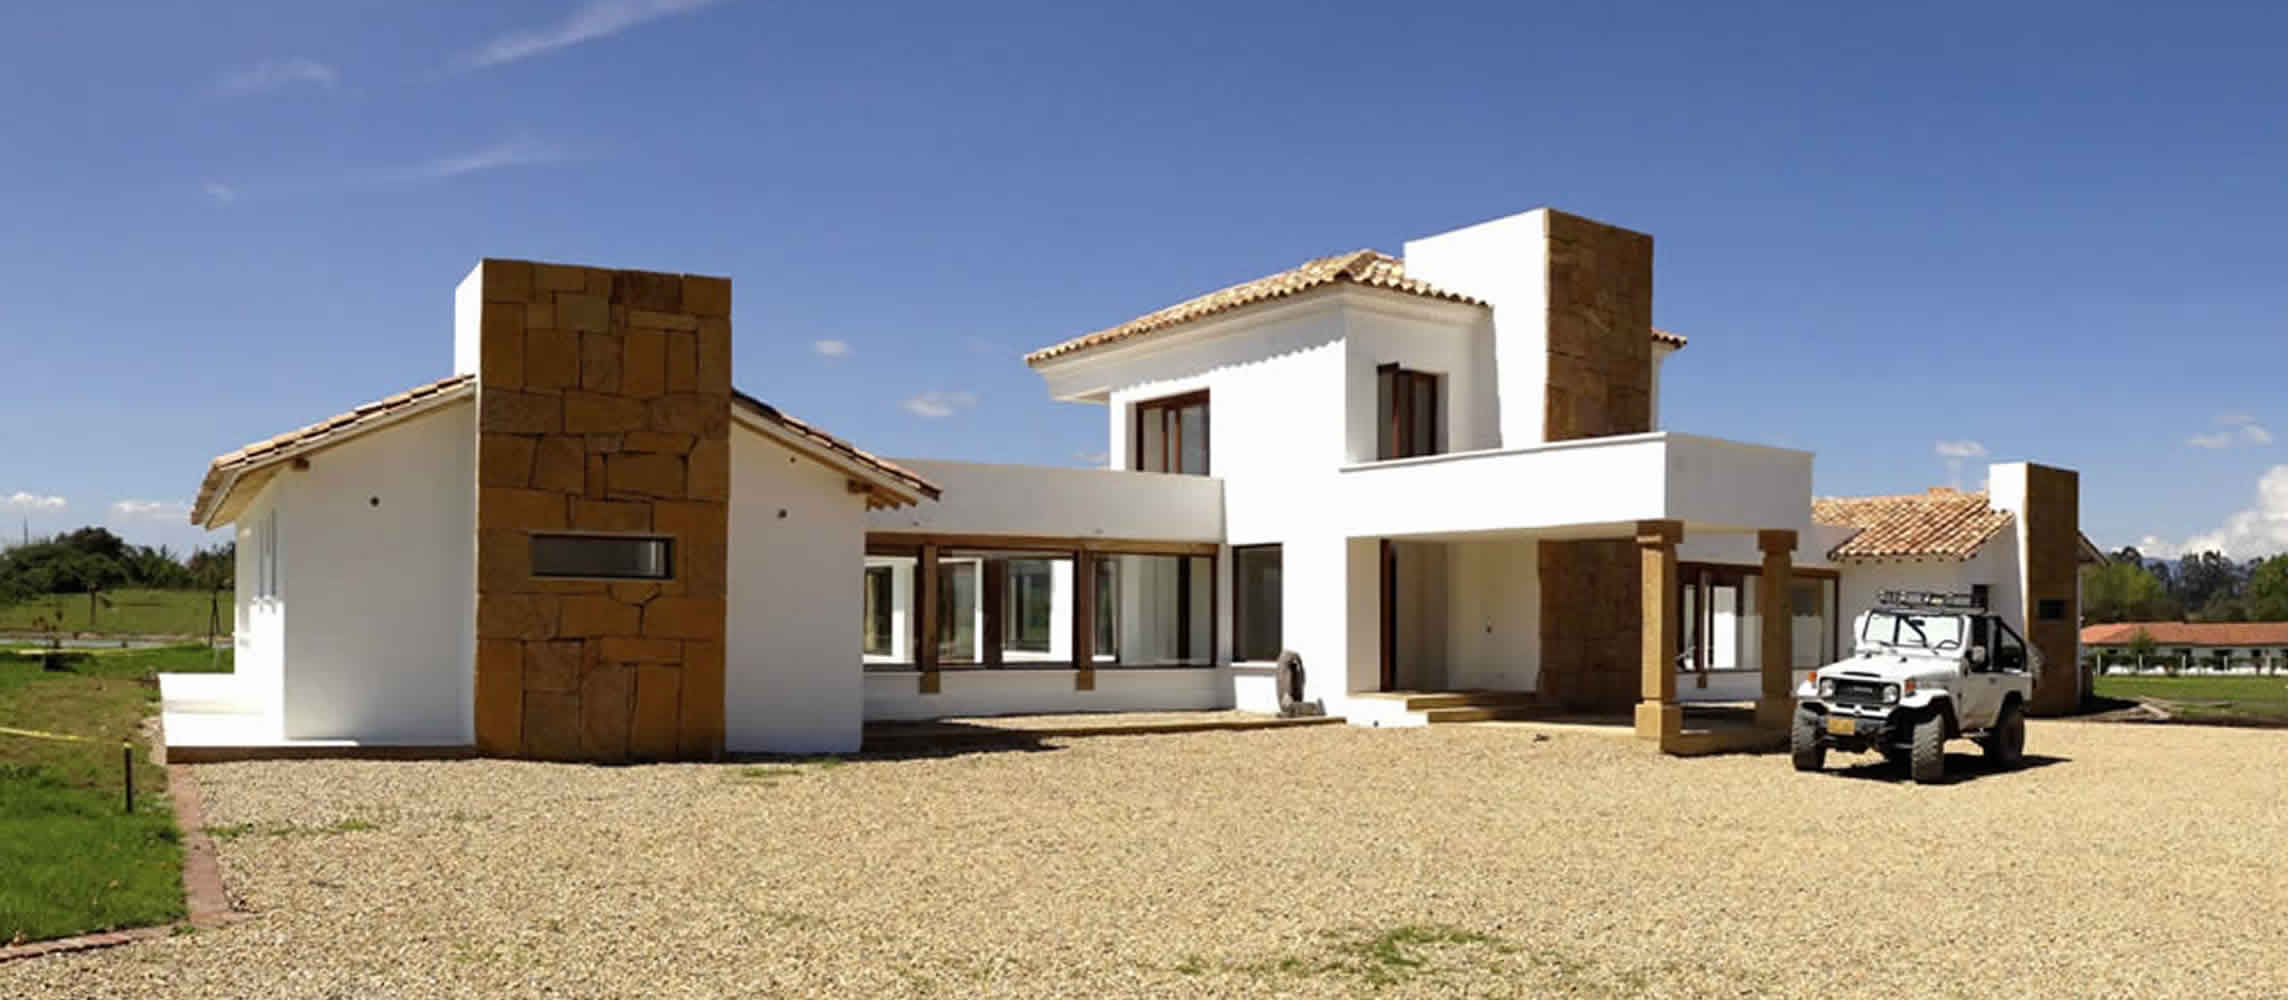 Casa Hipodromo en Villa de Leyva - Arquitecto Pedro Carvajal